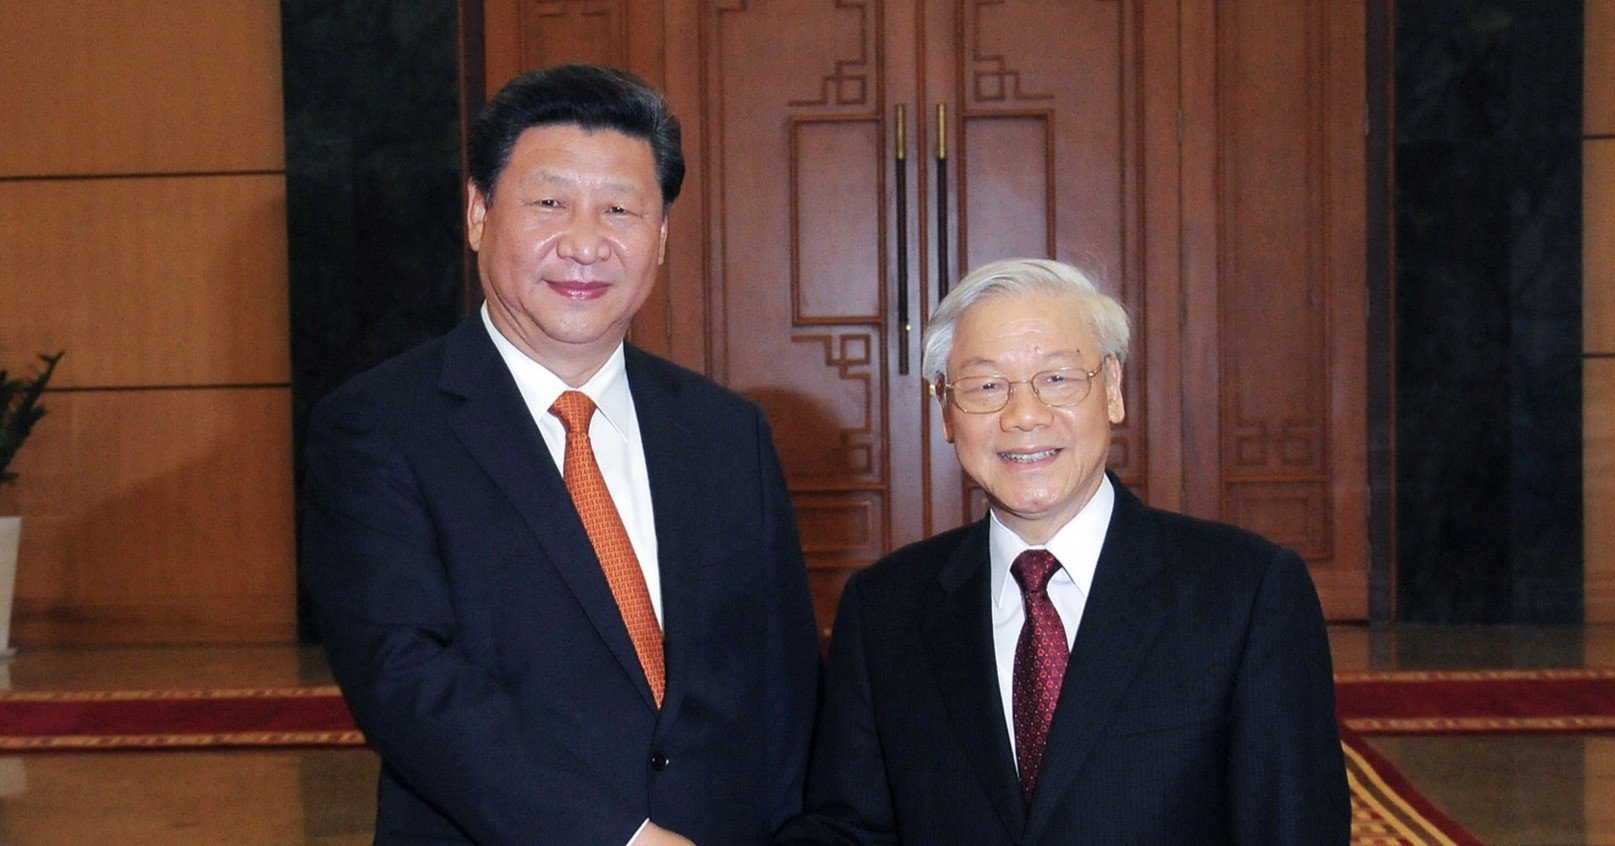 View - Tổng Bí thư, Chủ tịch Trung Quốc thăm Việt Nam: Lợi ích cho nhân dân 2 nước